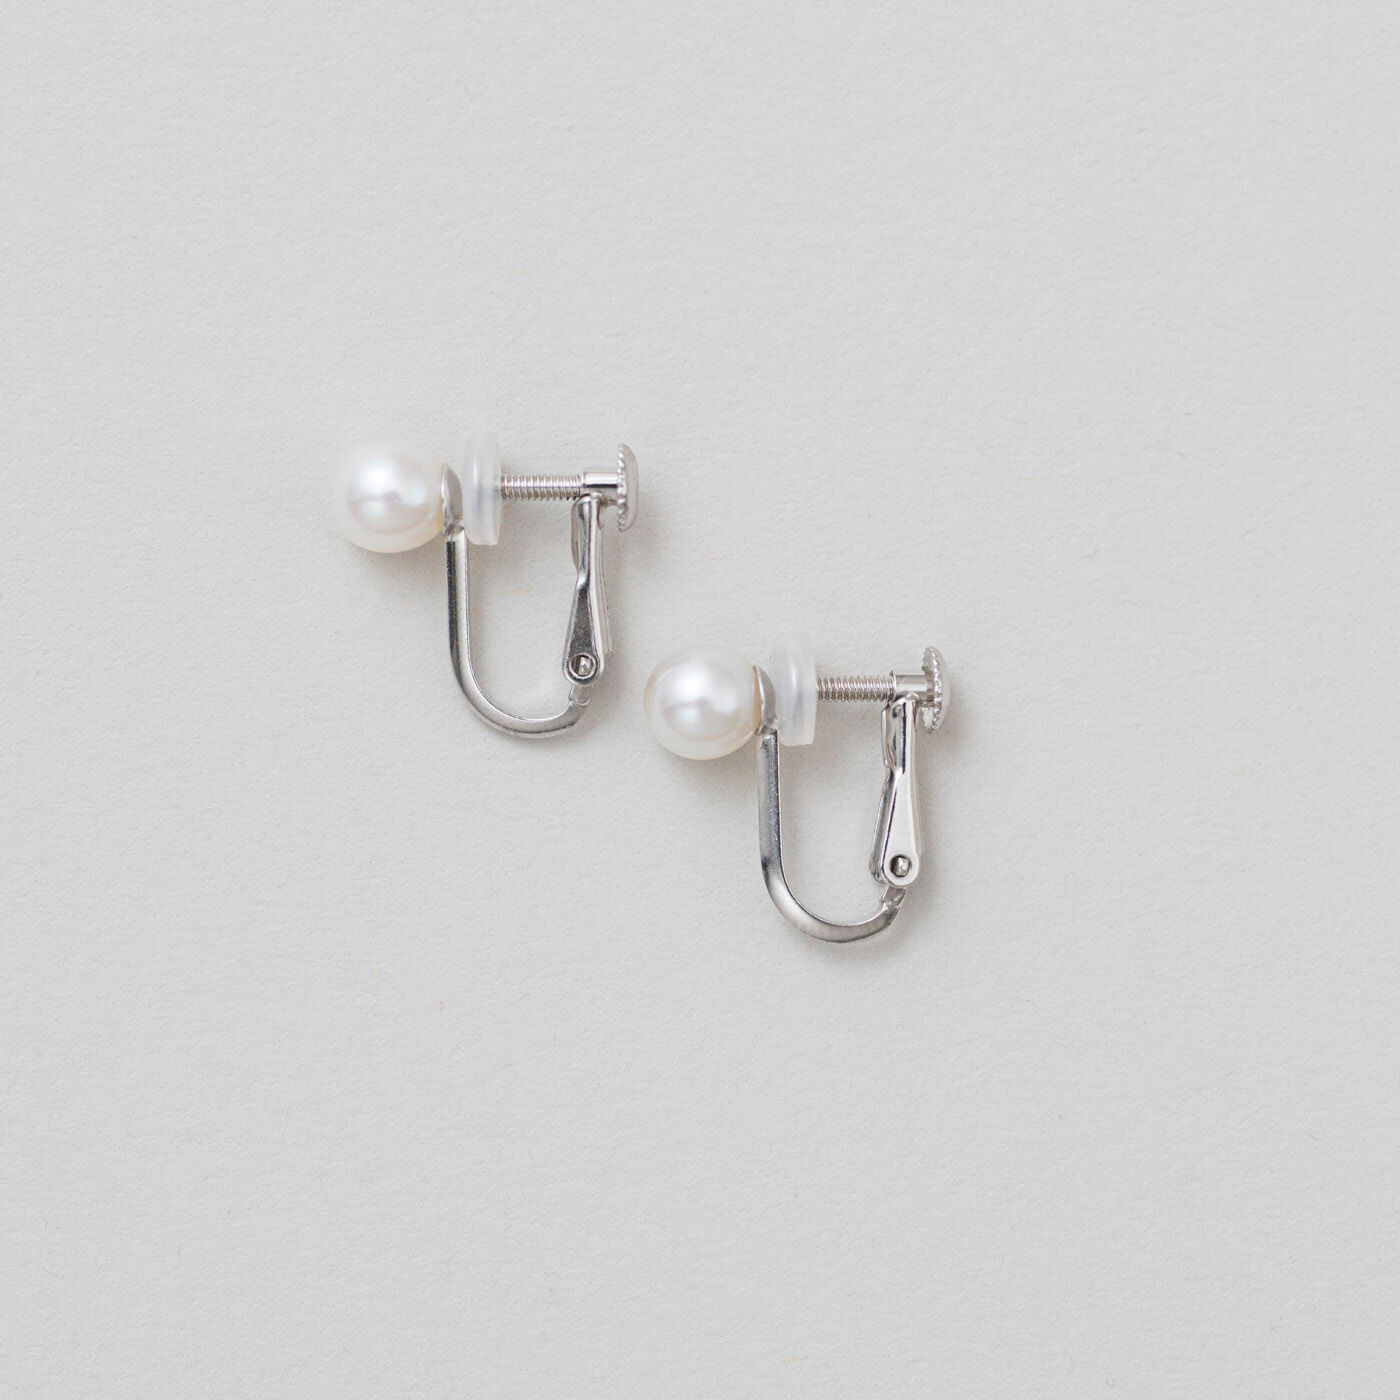 ＆Stories|神戸の老舗真珠メーカーが手掛けた 淡水パールの耳飾り|〈イヤリング〉タイプは、シルバー925の金具を使用。パールの輝きを邪魔しない、控え目な存在感がポイントです。